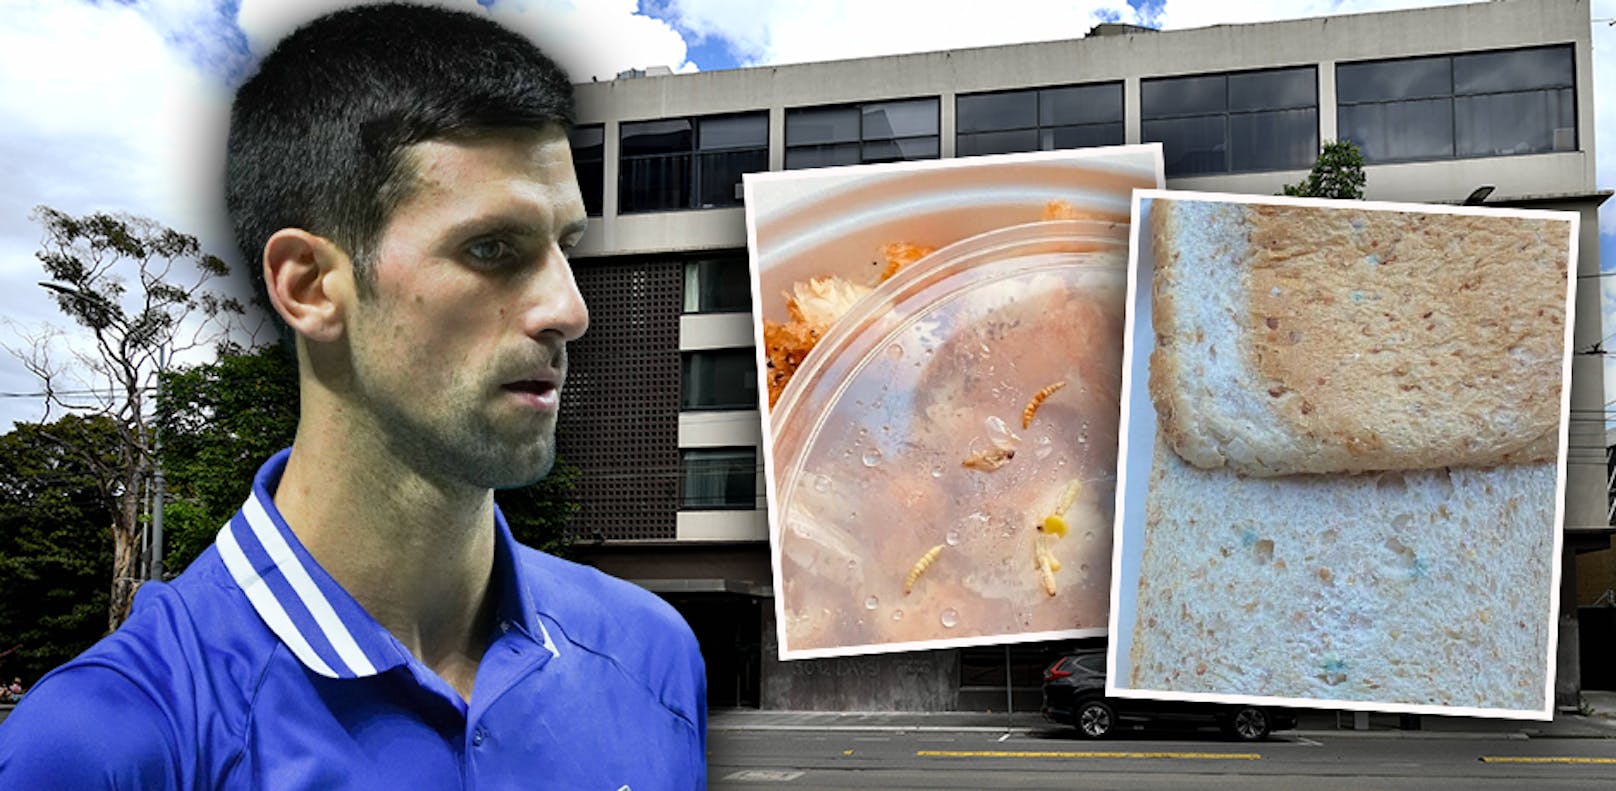 In den Medien kursieren Ekel-Berichte über schimmeliges Essen, Ungeziefer, unwürdige Zustände in der umstrittenen Unterkunft. Djokovic setzt schließlich zumindest durch, dass er einen eigenen Koch bekommt.